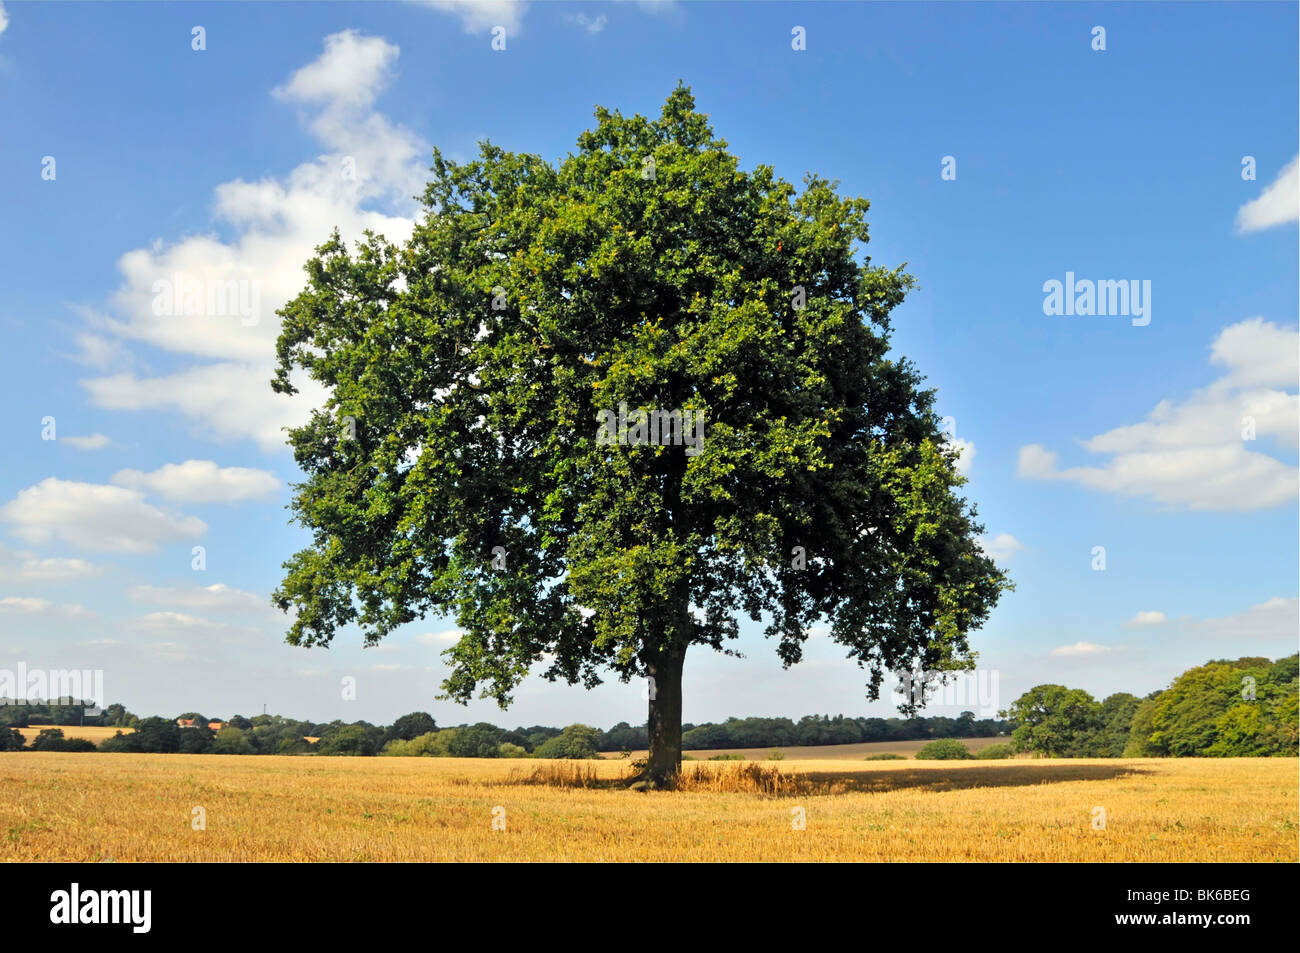 Exemplar der klassischen Eichenbaumform steht allein auf einem ländlichen Stoppeln-Ackerfeld in der Nähe von Brentwood Essex auf der Landschaft des blauen Himmels Sommertagslandschaft England Großbritannien Stockfoto